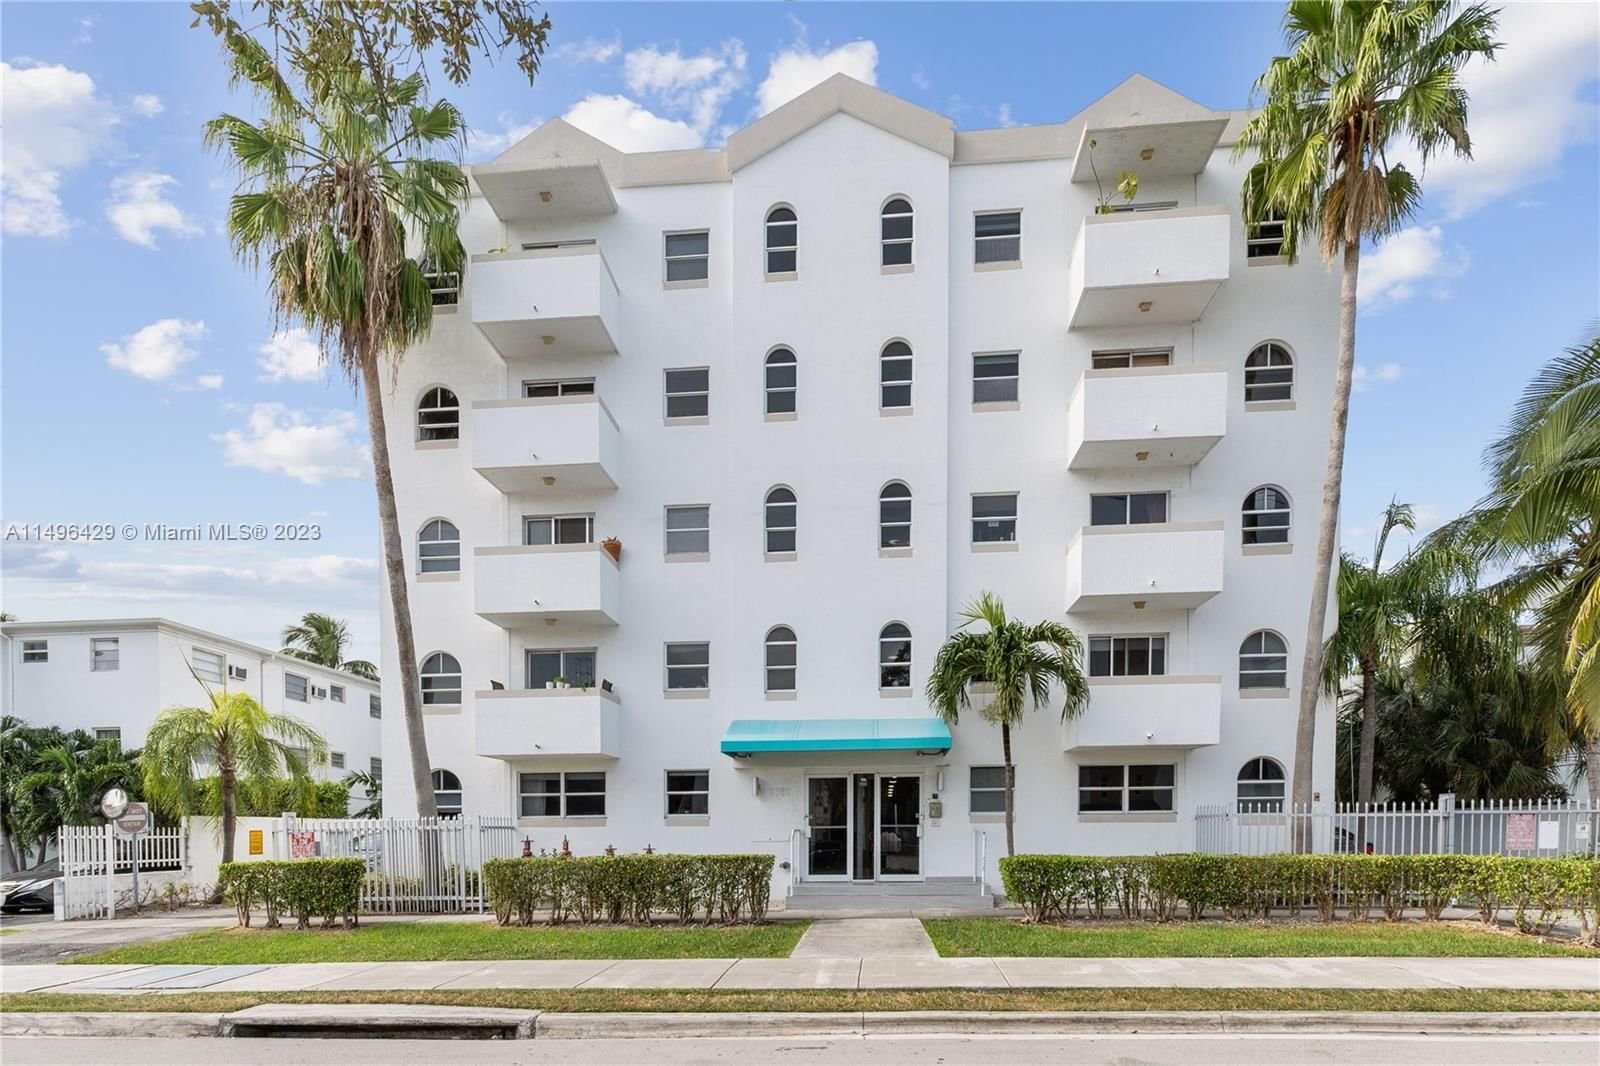 Real estate property located at 3052 27th Ave #302, Miami-Dade County, GROVE PALMS I CONDO, Miami, FL